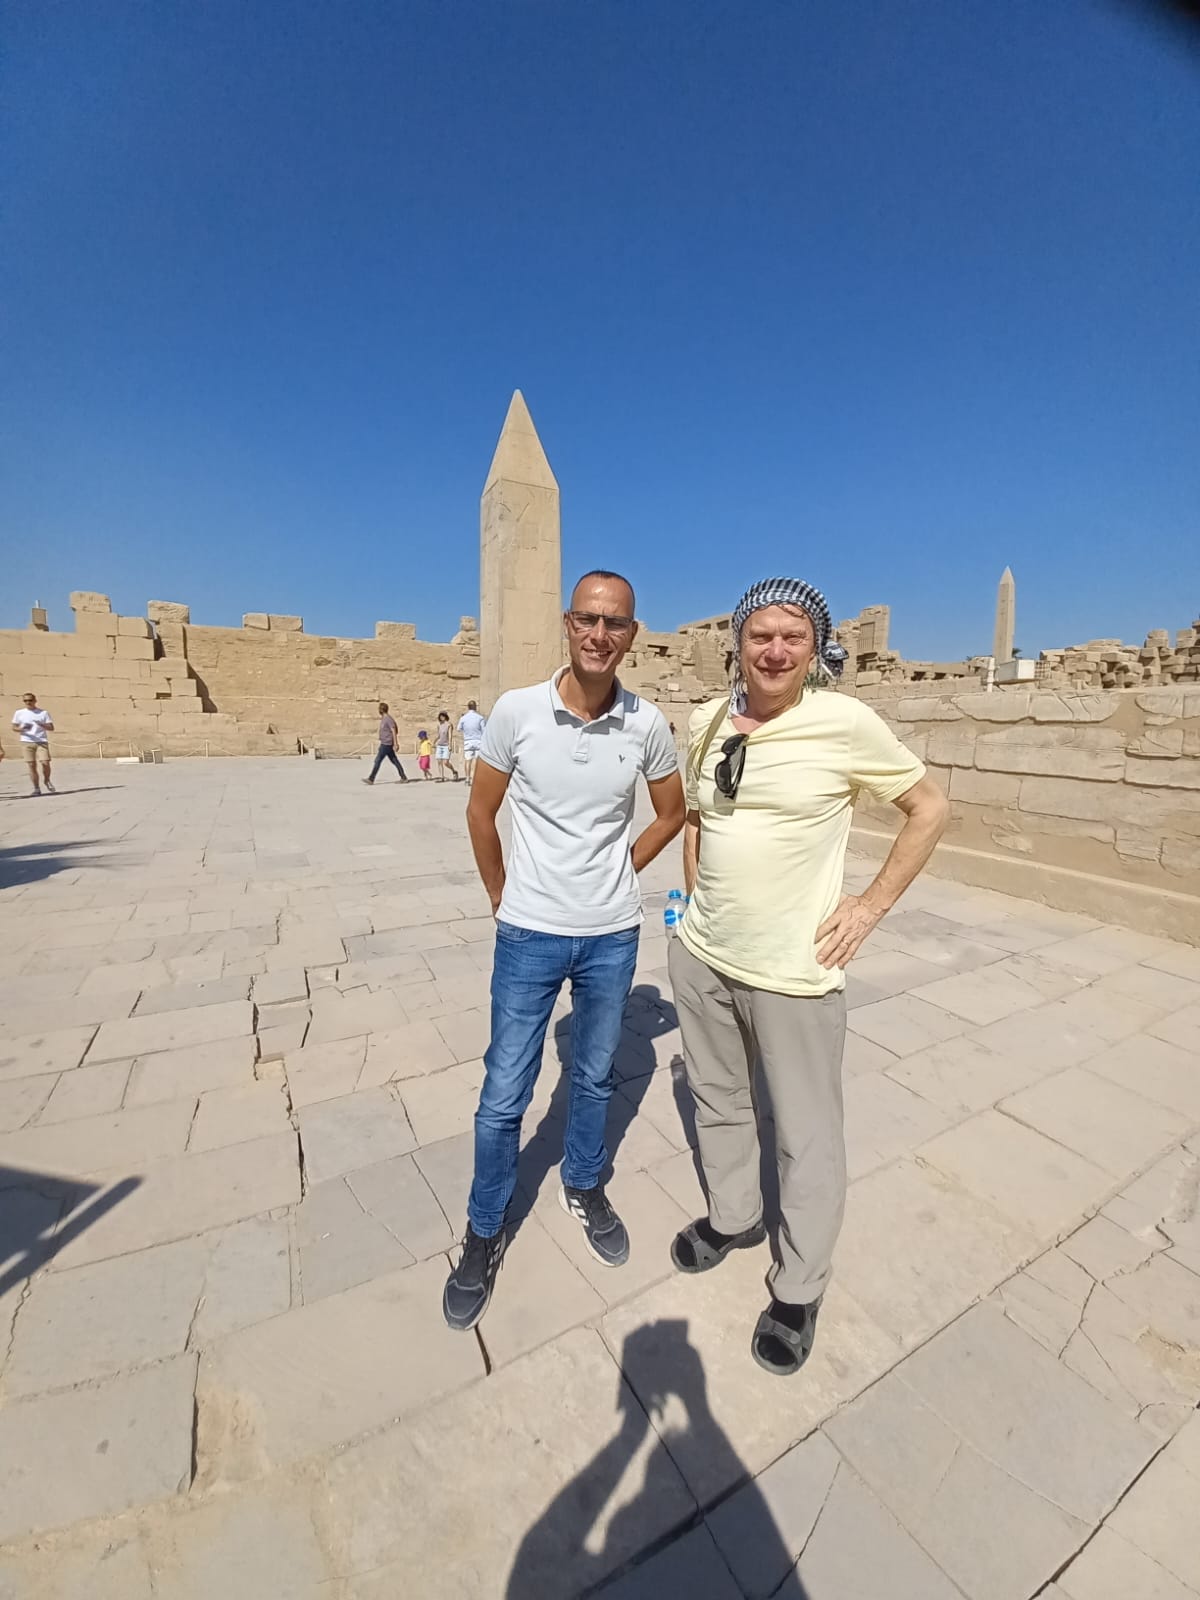 Heiligen See im Tempelkomplexe vom Karnak steht dort eine 9 Meter Obelisk